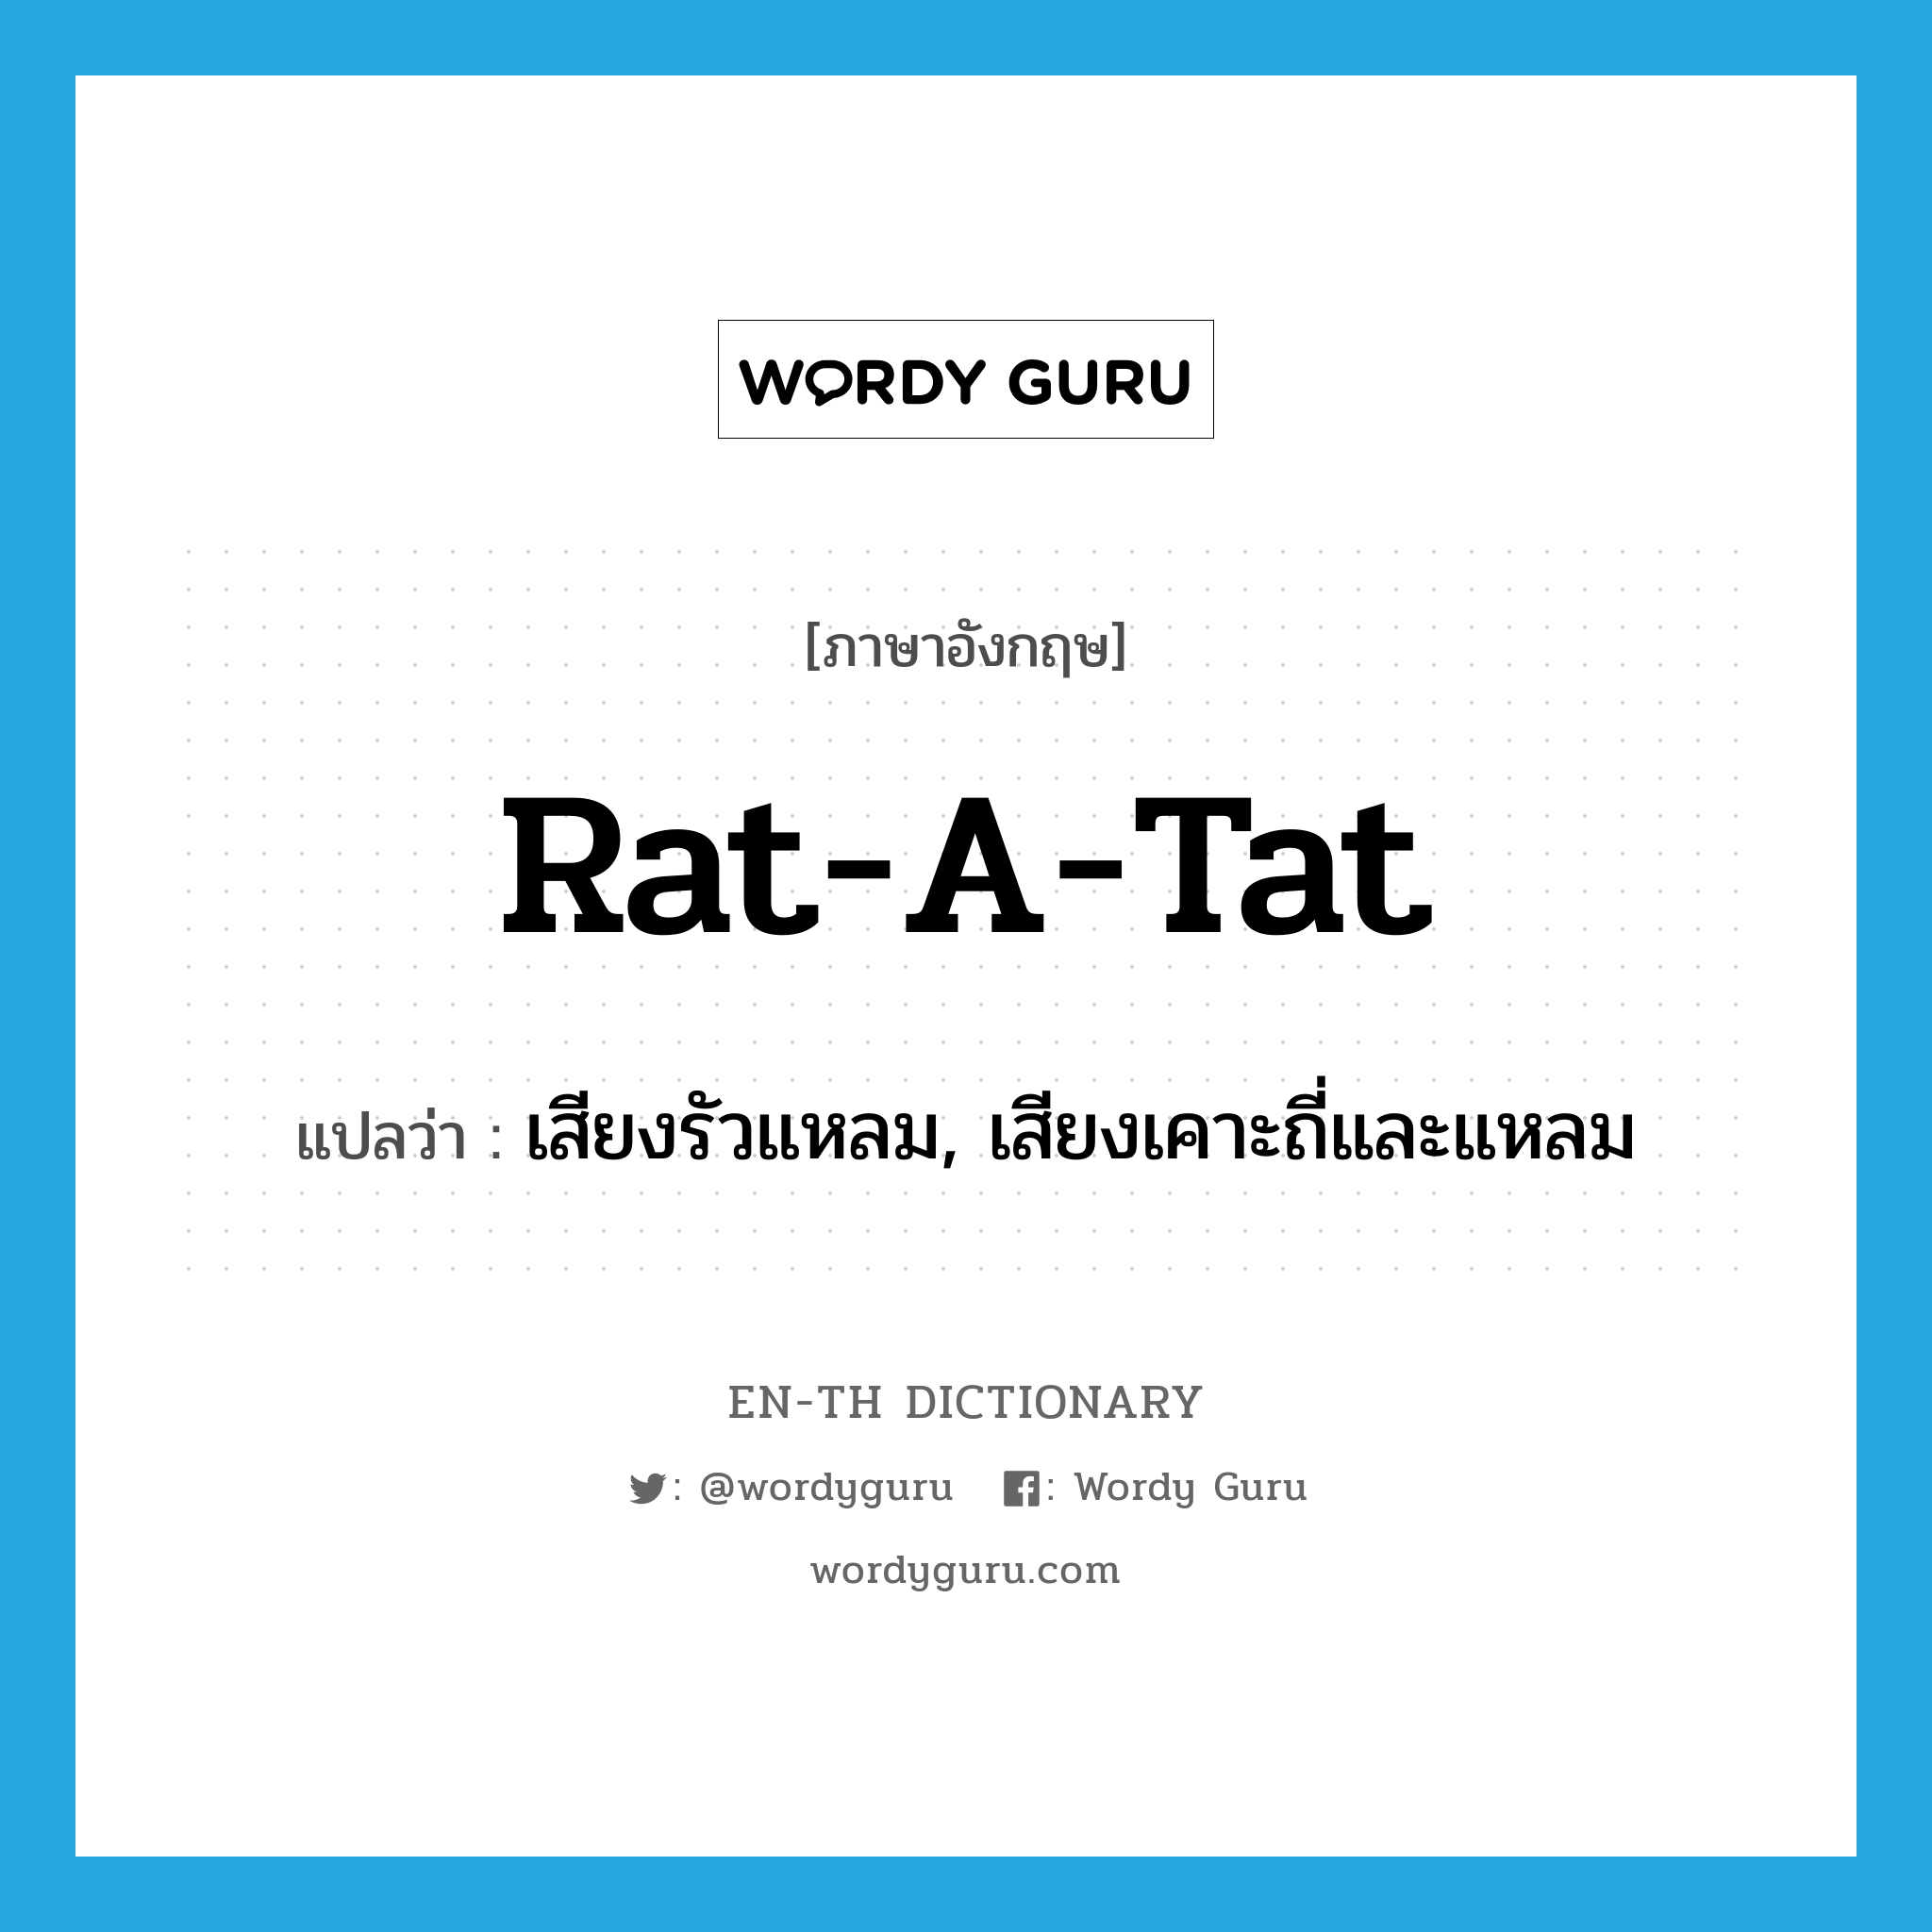 เสียงรัวแหลม, เสียงเคาะถี่และแหลม ภาษาอังกฤษ?, คำศัพท์ภาษาอังกฤษ เสียงรัวแหลม, เสียงเคาะถี่และแหลม แปลว่า rat-a-tat ประเภท N หมวด N